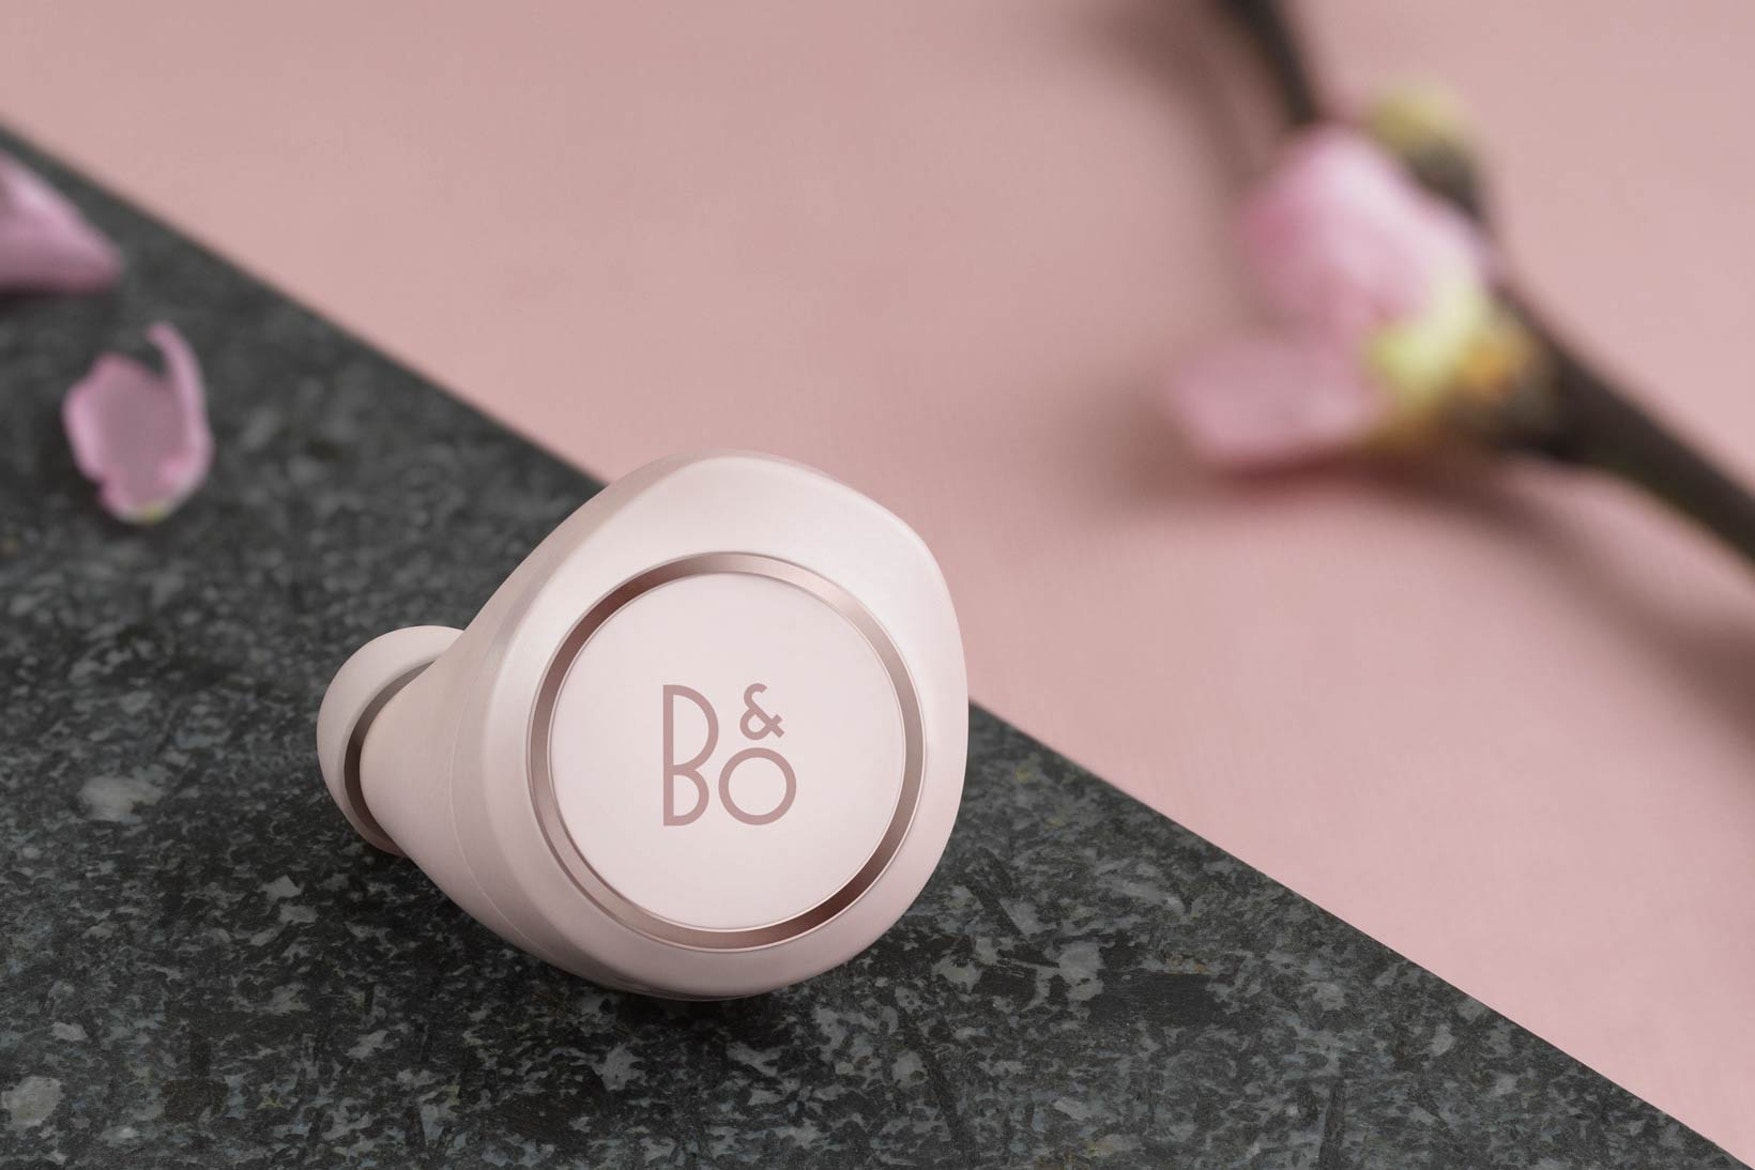 B&O PLAY 為 Beoplay E8 無線耳機推出粉色限量版本